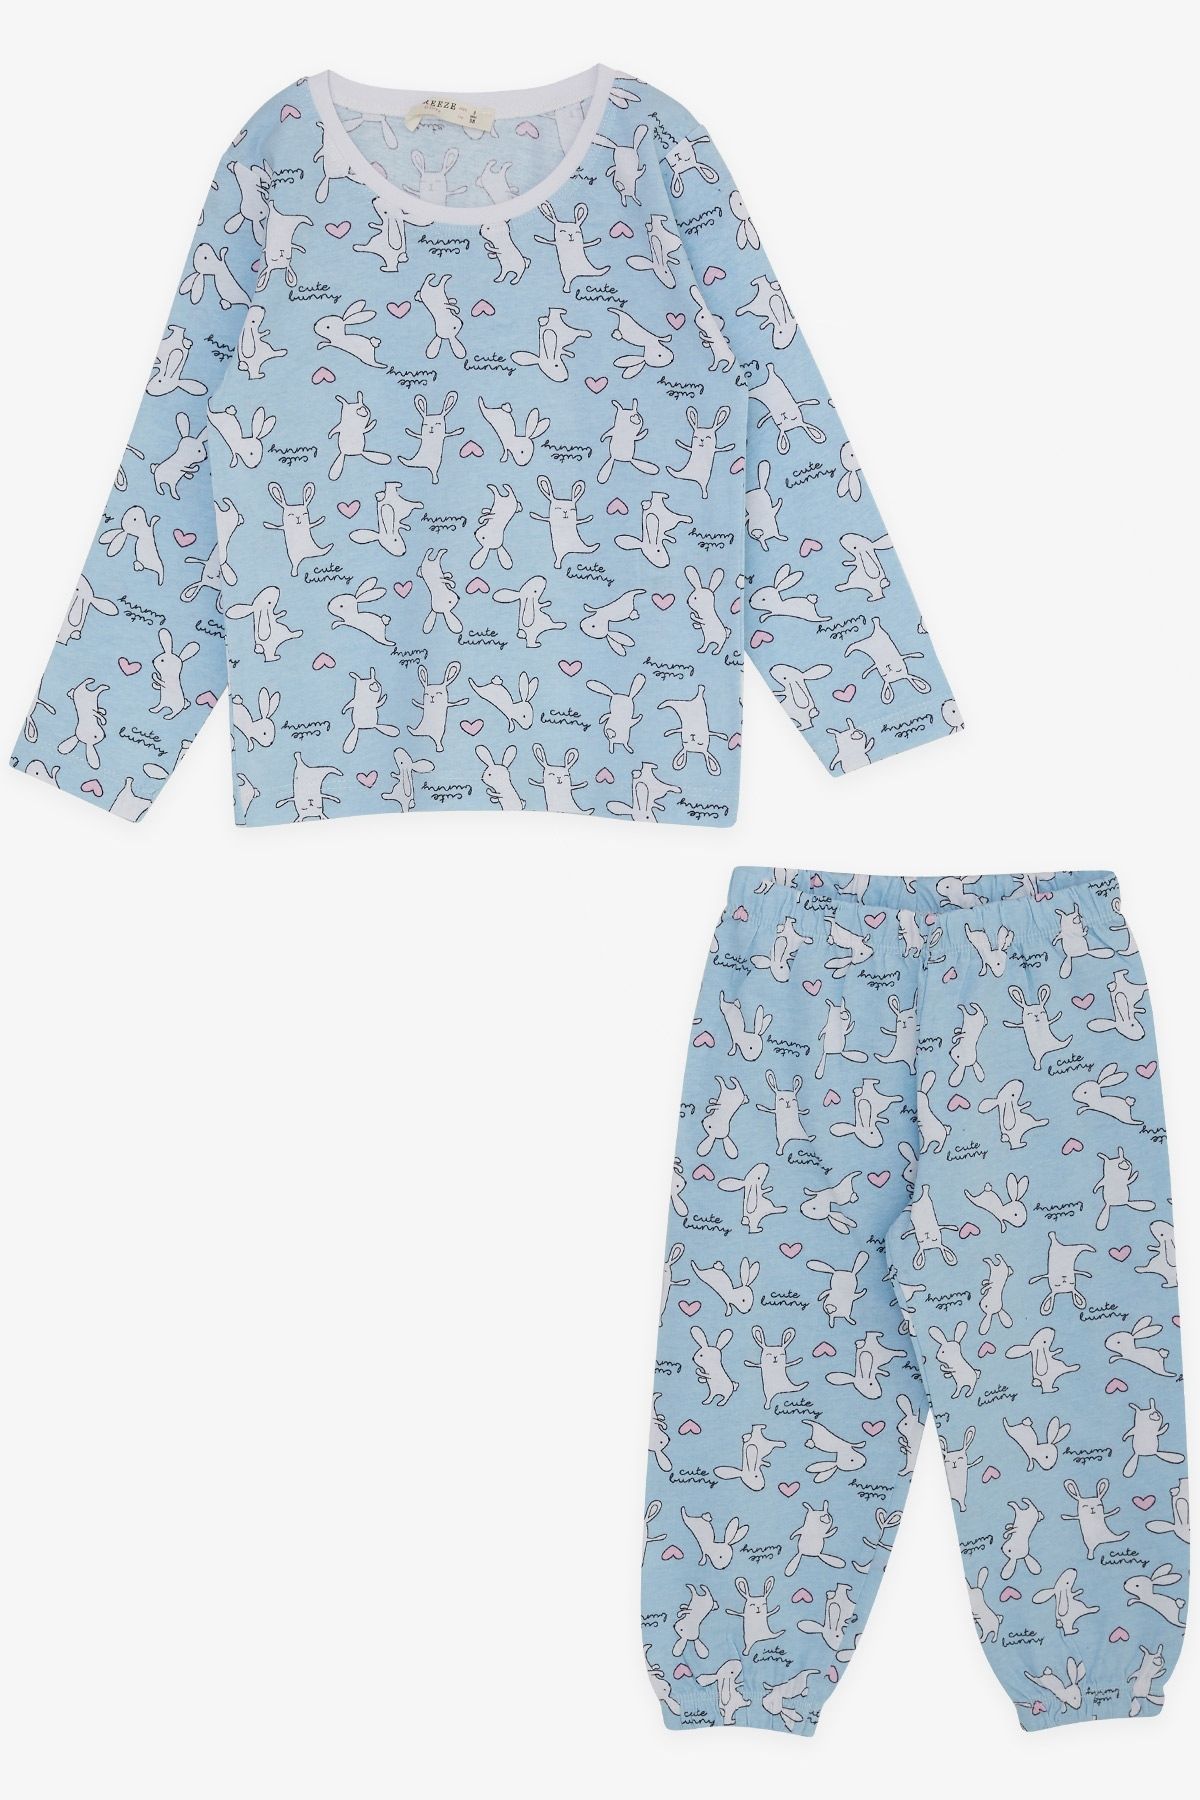 Breeze Kız Bebek Pijama Takımı Eğlenceli Tavşancık Desenli 9 Ay-3 Yaş, Bebe Mavisi